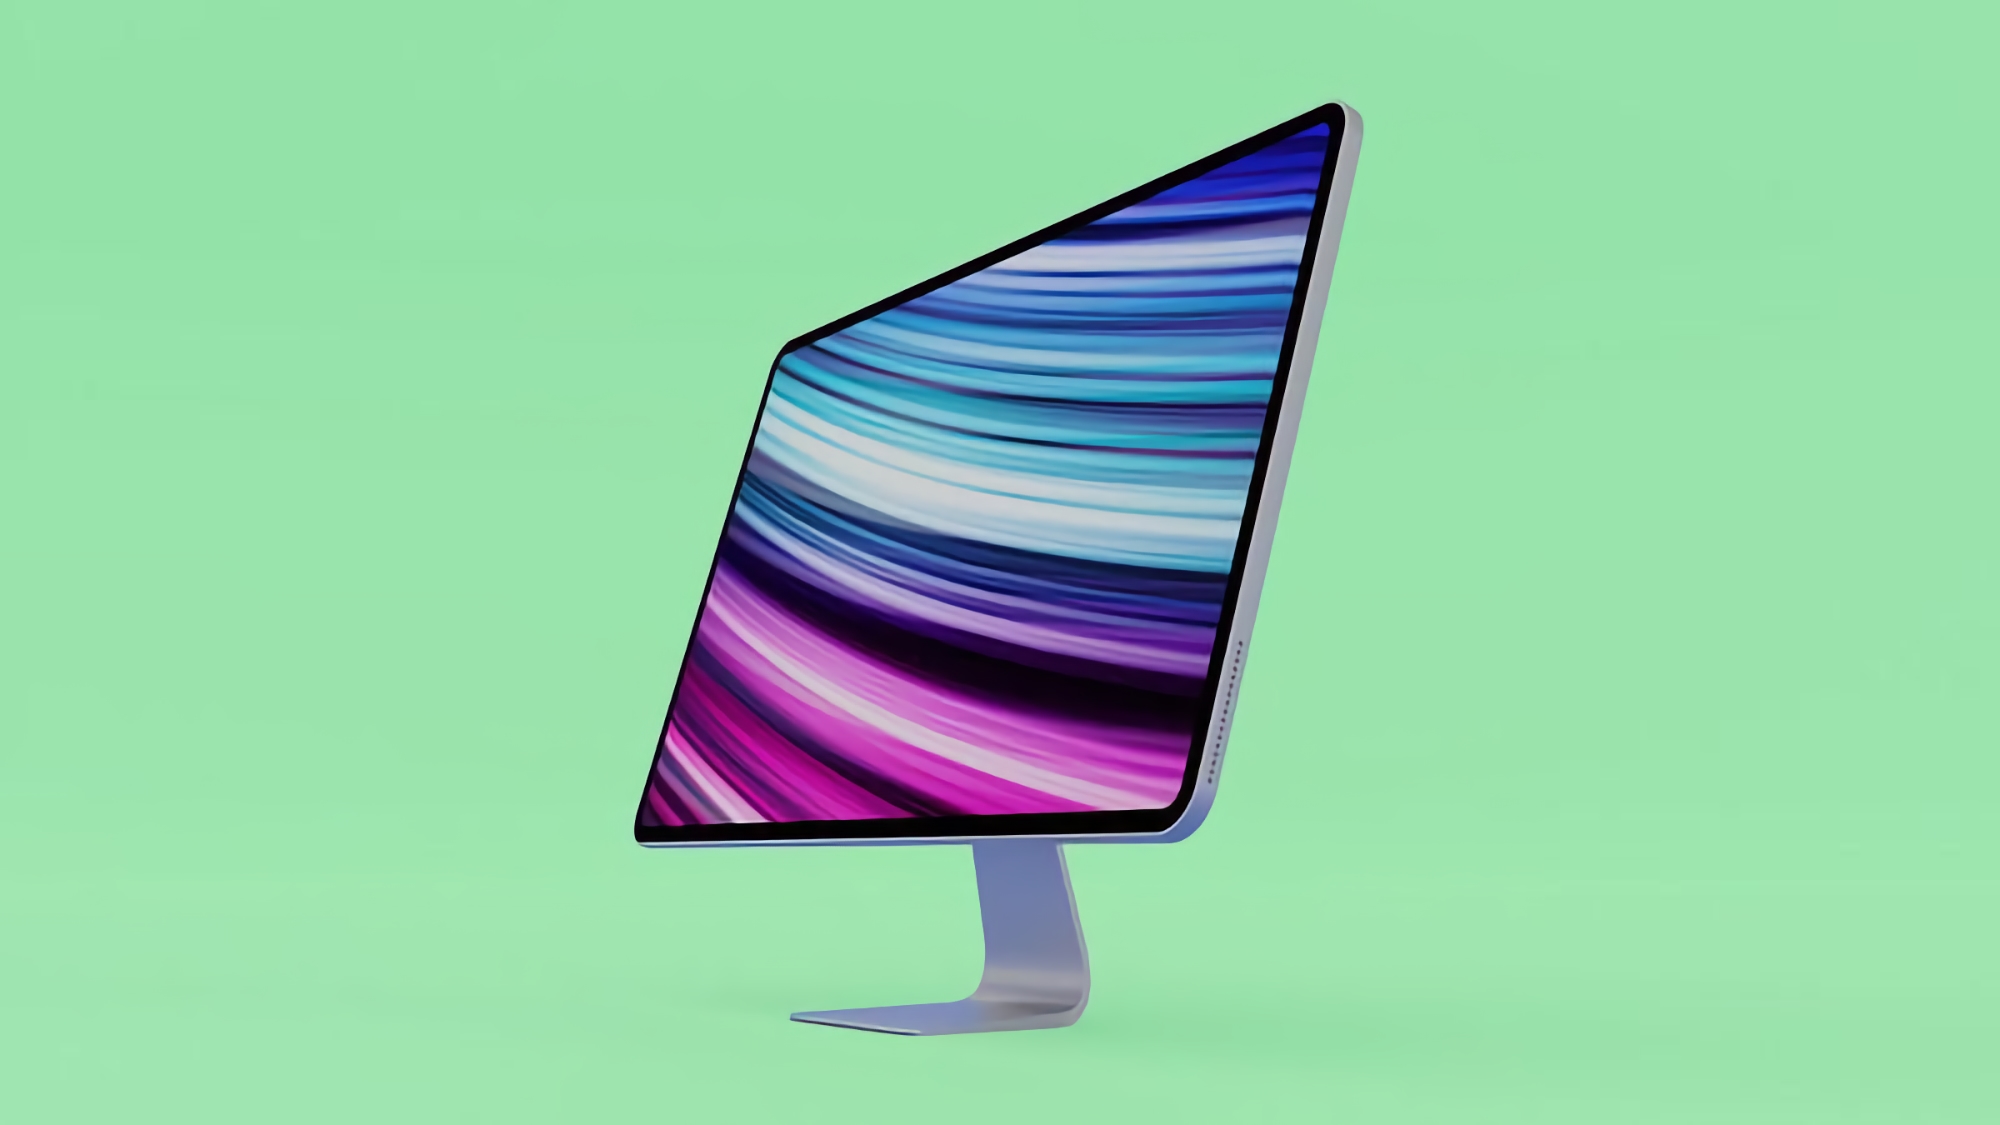 Plotka: nowy iMac Pro z ekranem Mini-LED i autorskim chipem zostanie zaprezentowany w czerwcu